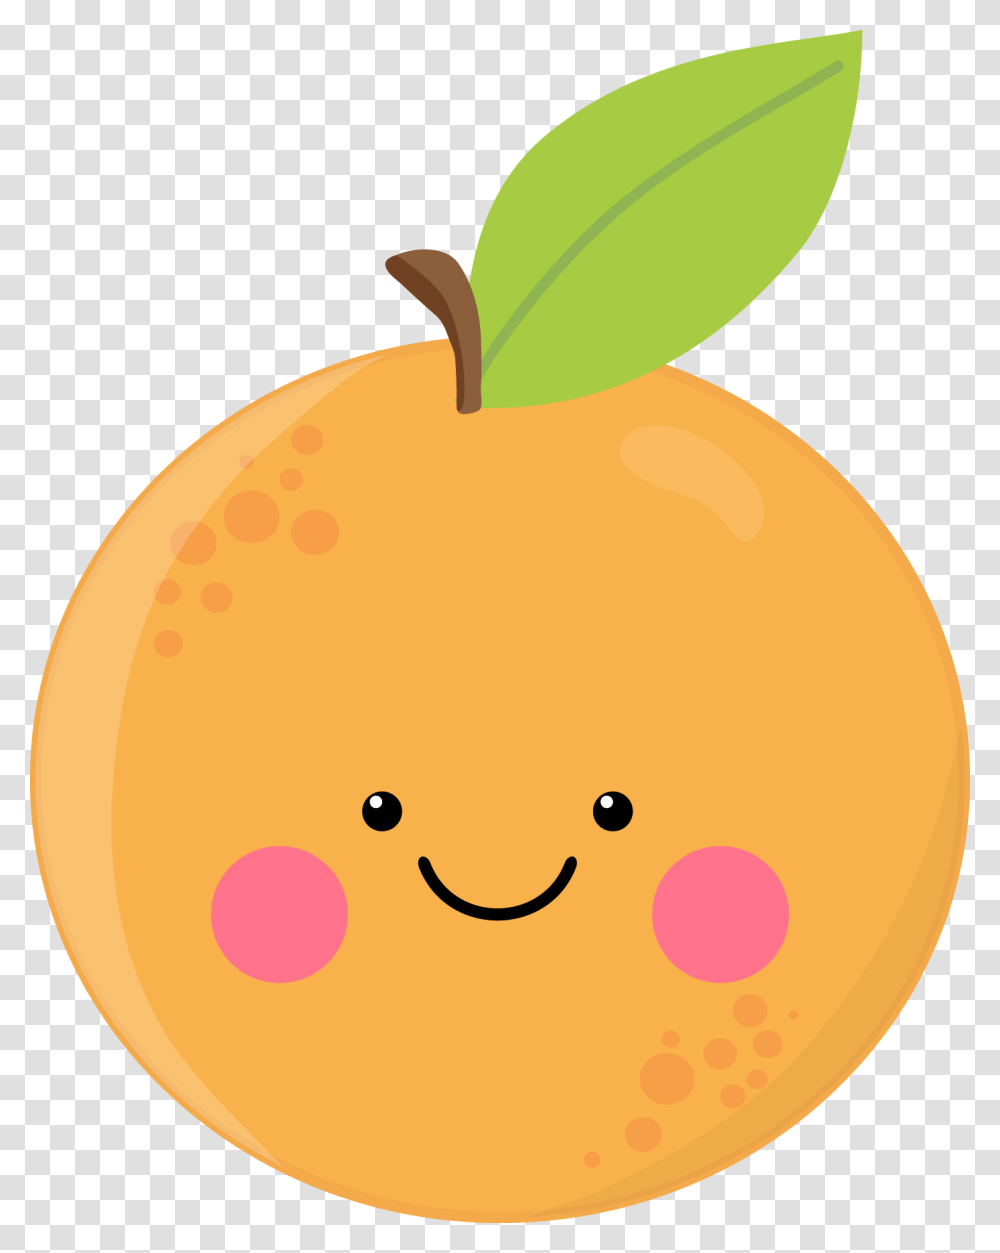 Cute Orange Orange Cute Sticker, Plant, Apricot, Fruit, Produce Transparent Png